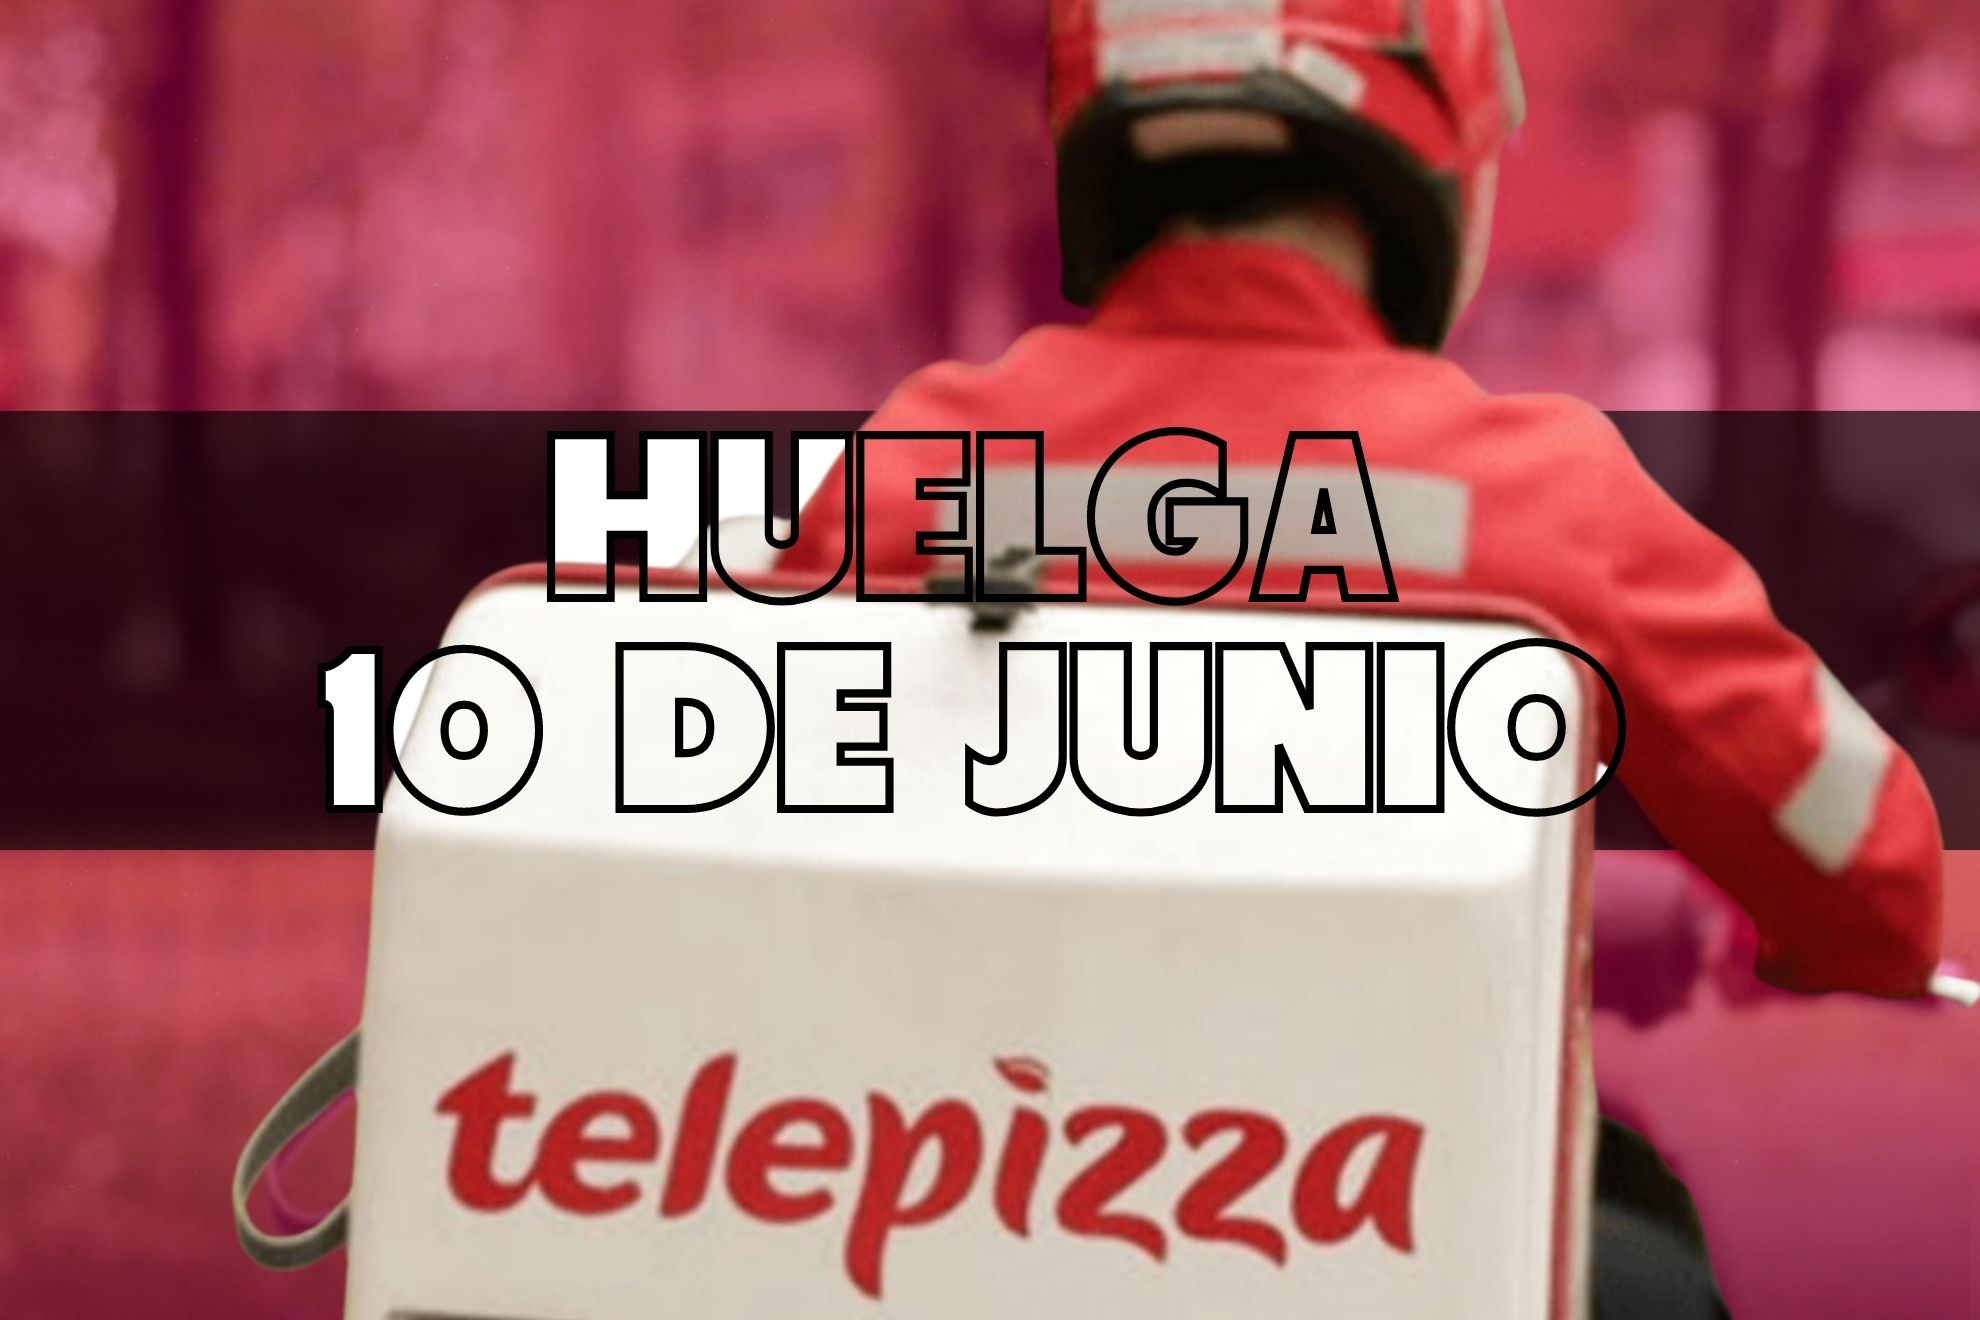 Sábado 10 de junio, contra la más absoluta precariedad: Telepizza en huelga